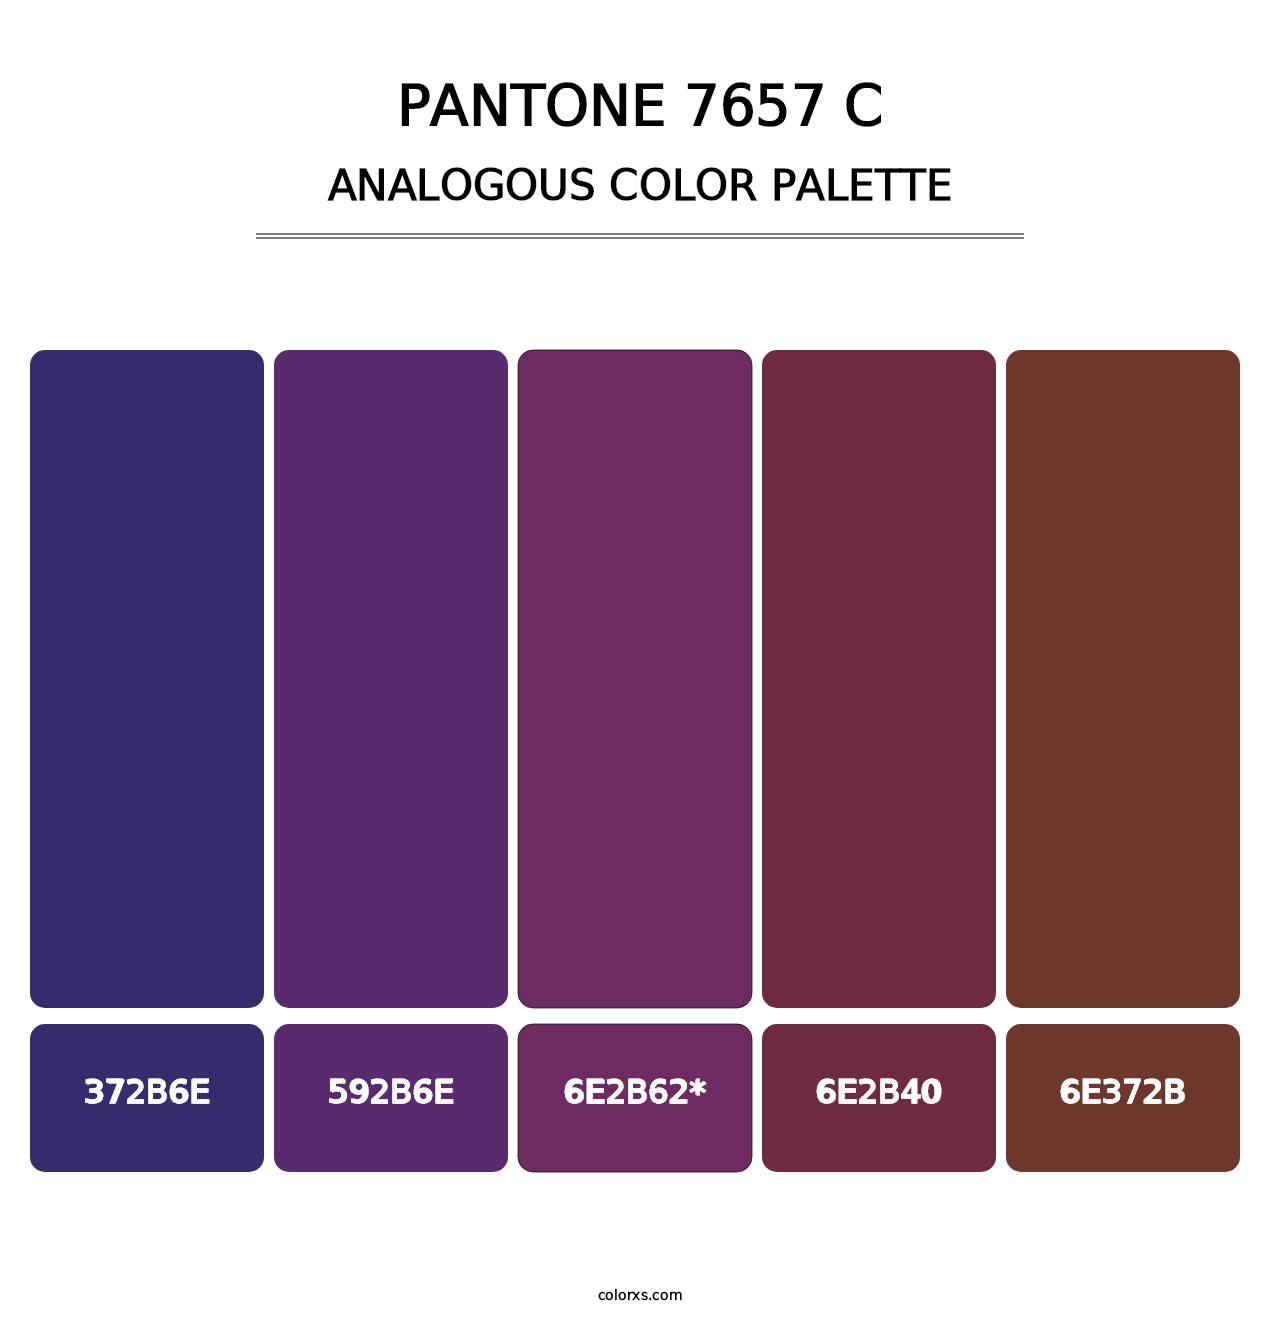 PANTONE 7657 C - Analogous Color Palette